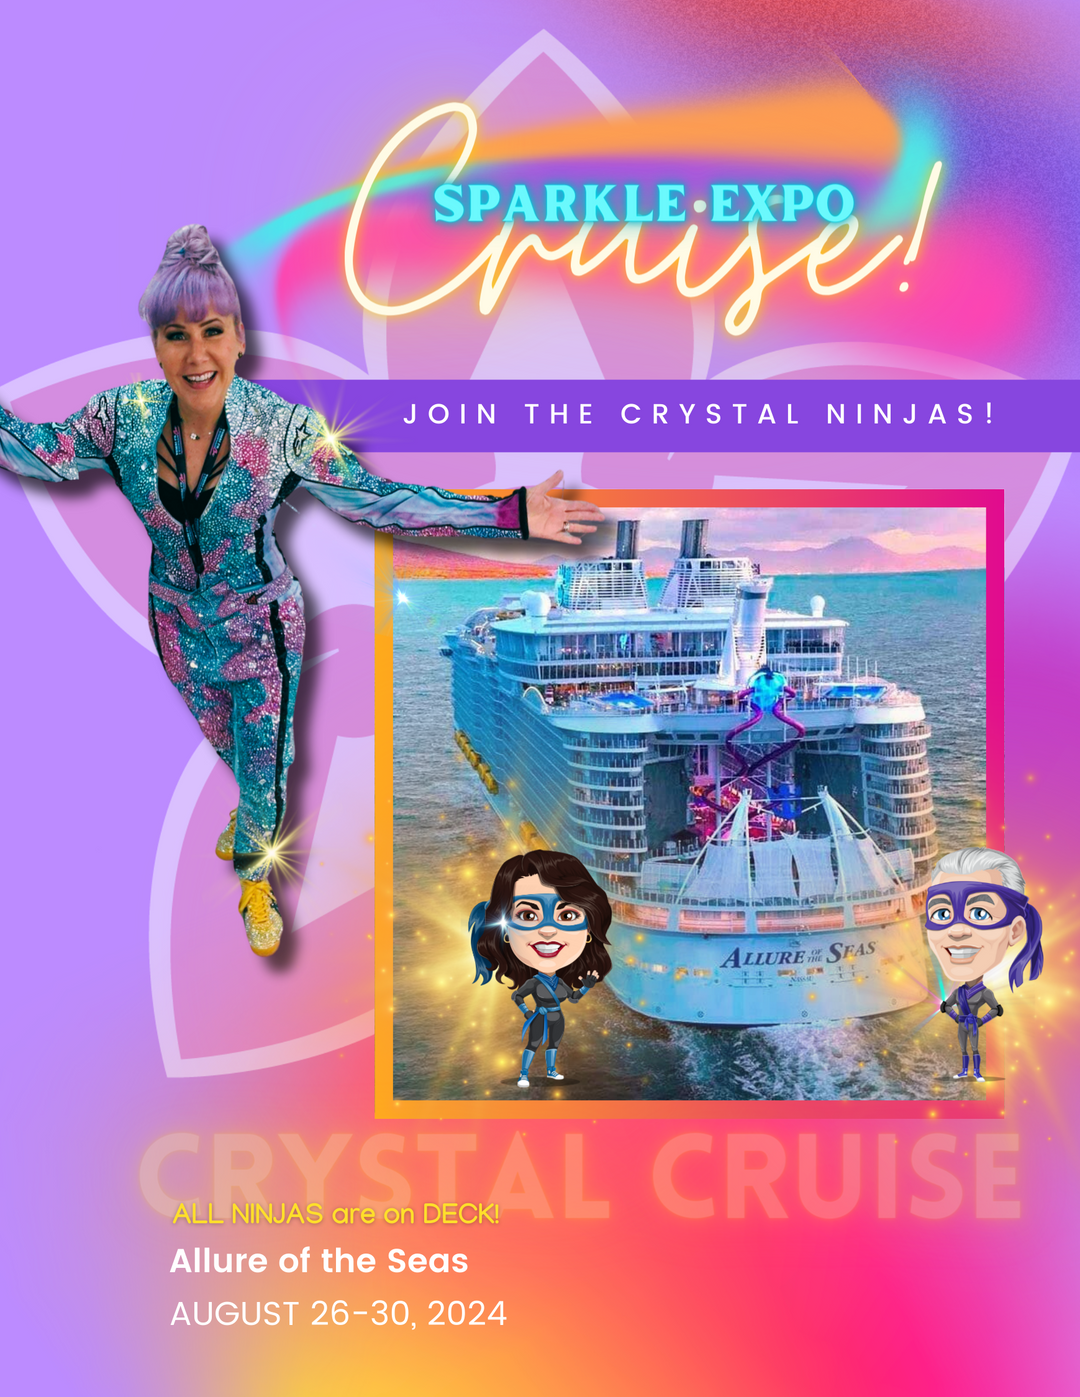 *Sparkle Expo! Allure of the Seas Class & Crystal Cruise! Miami to Nassau: Aug 26-Aug 30